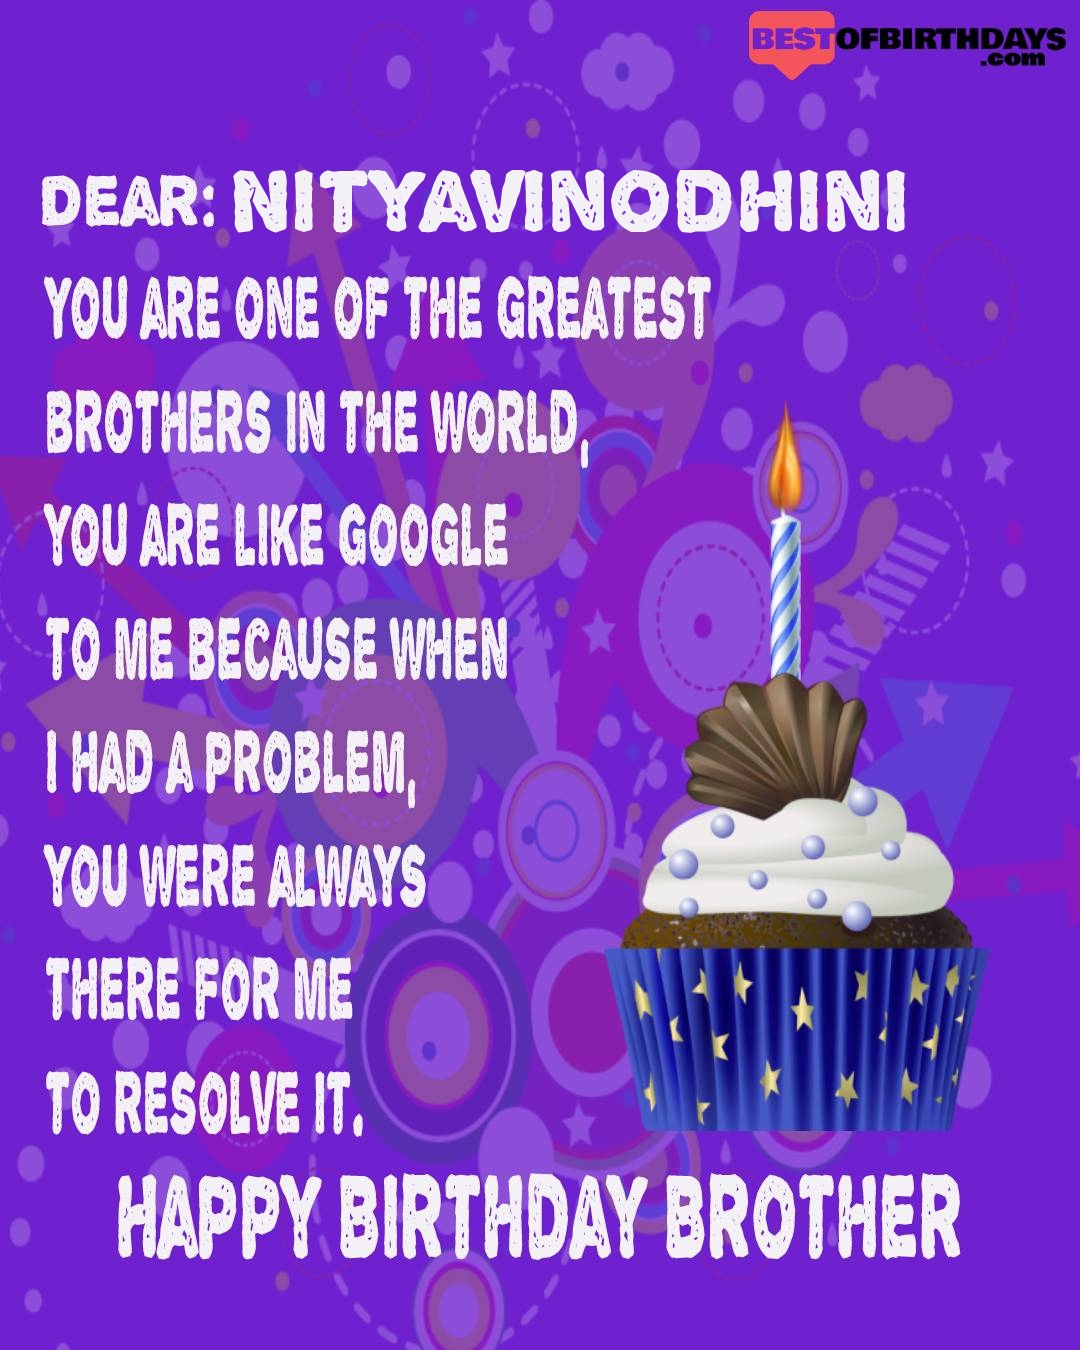 Happy birthday nityavinodhini bhai brother bro